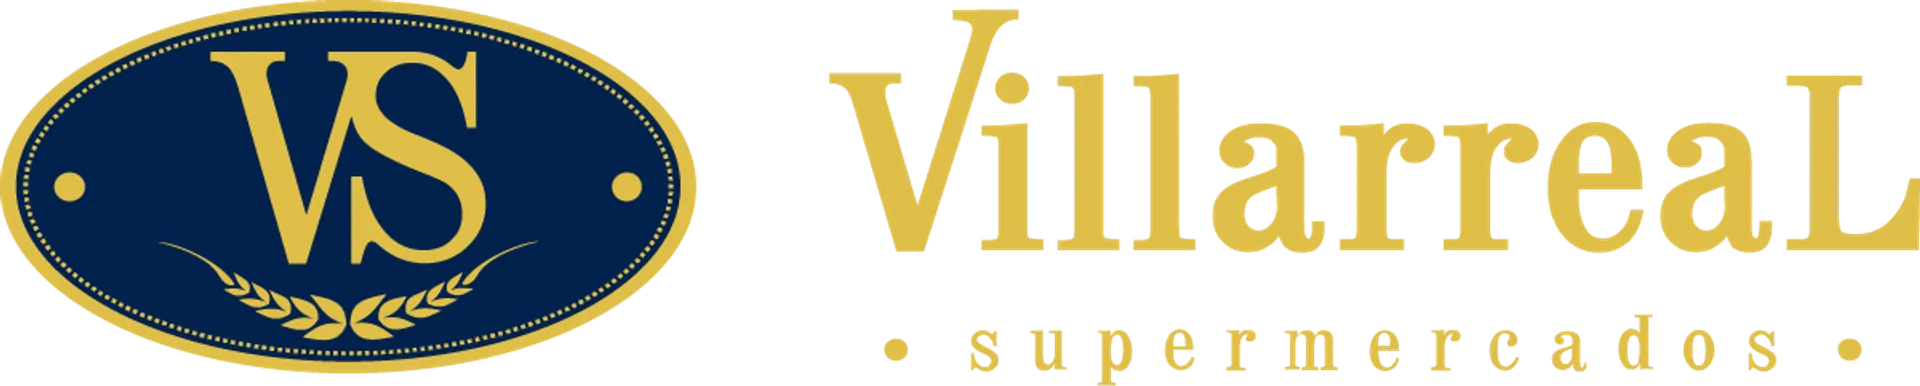 VILLARREAL logo